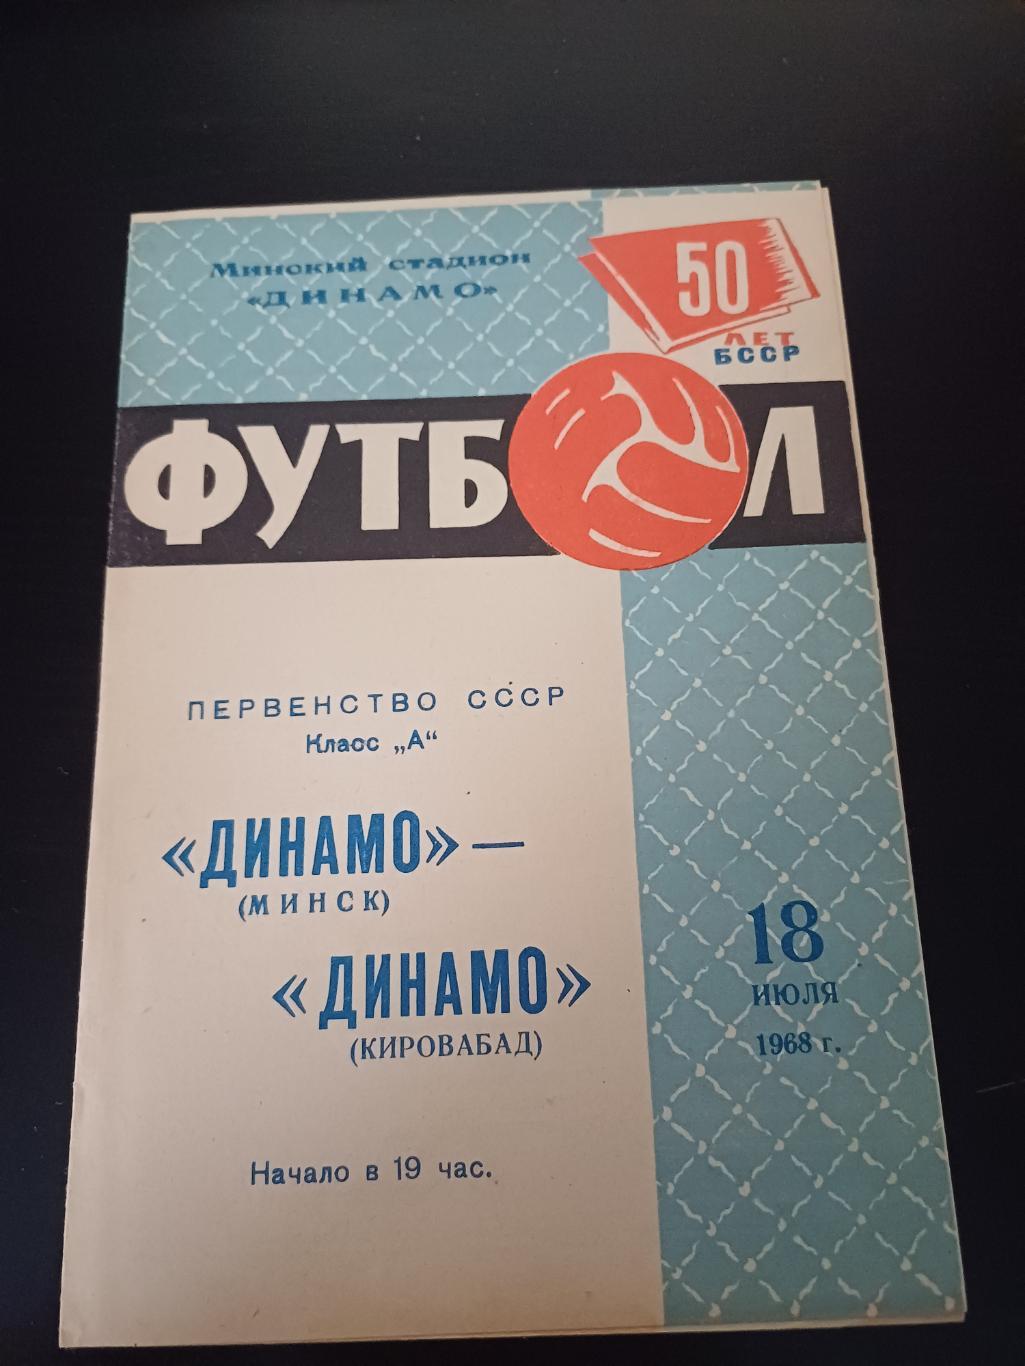 Динамо (Минск) - Динамо (Кировабад) 1968